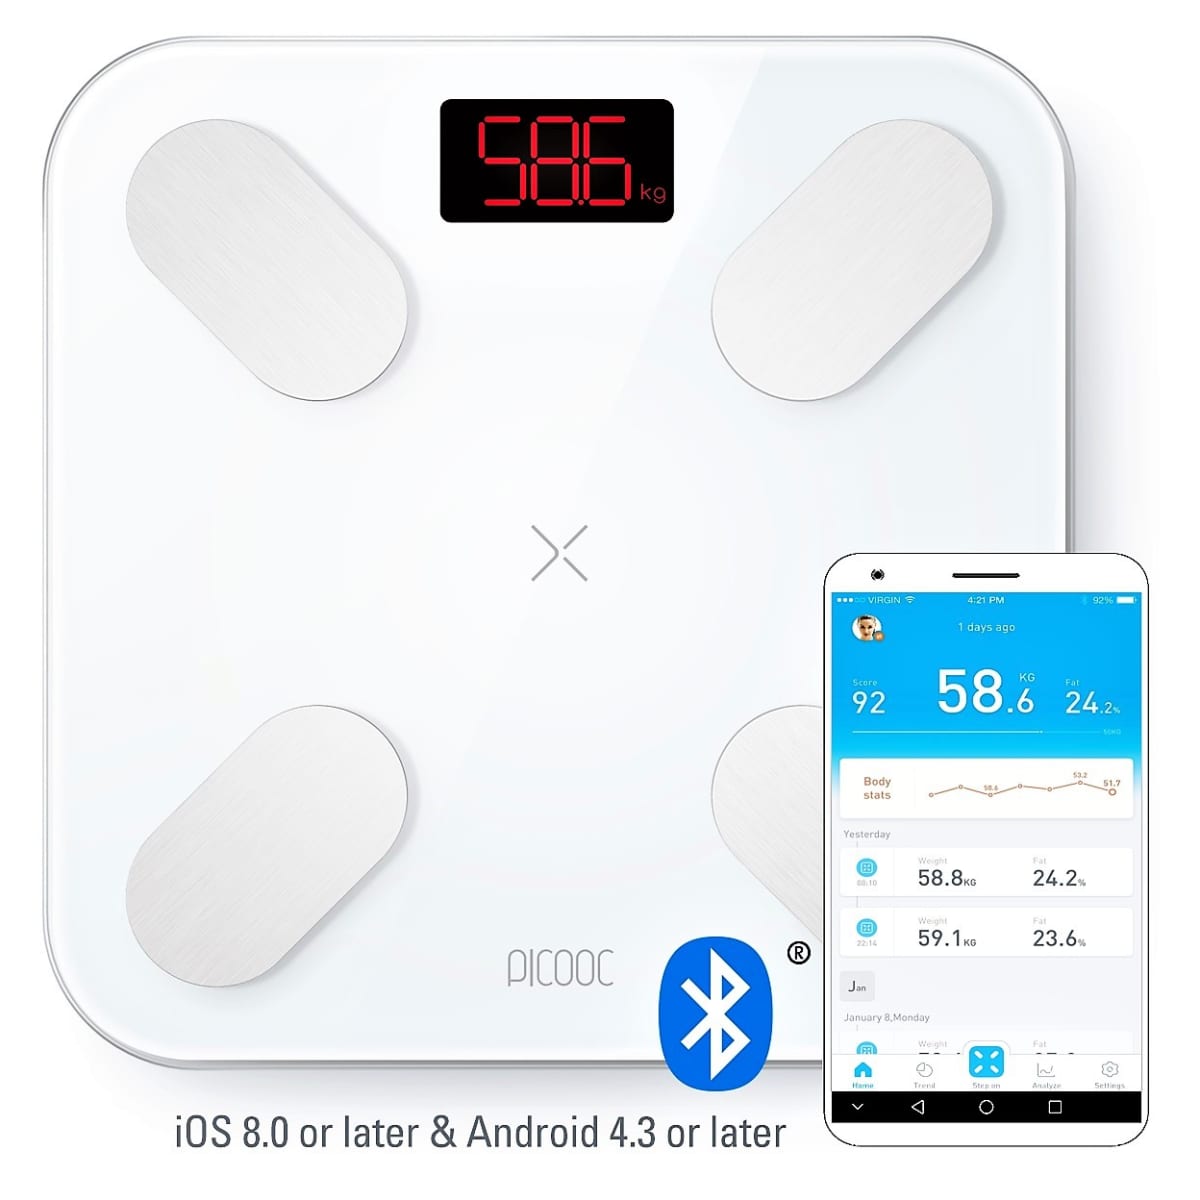 PICOOC Mini Lite Smart Body Weight Scale 